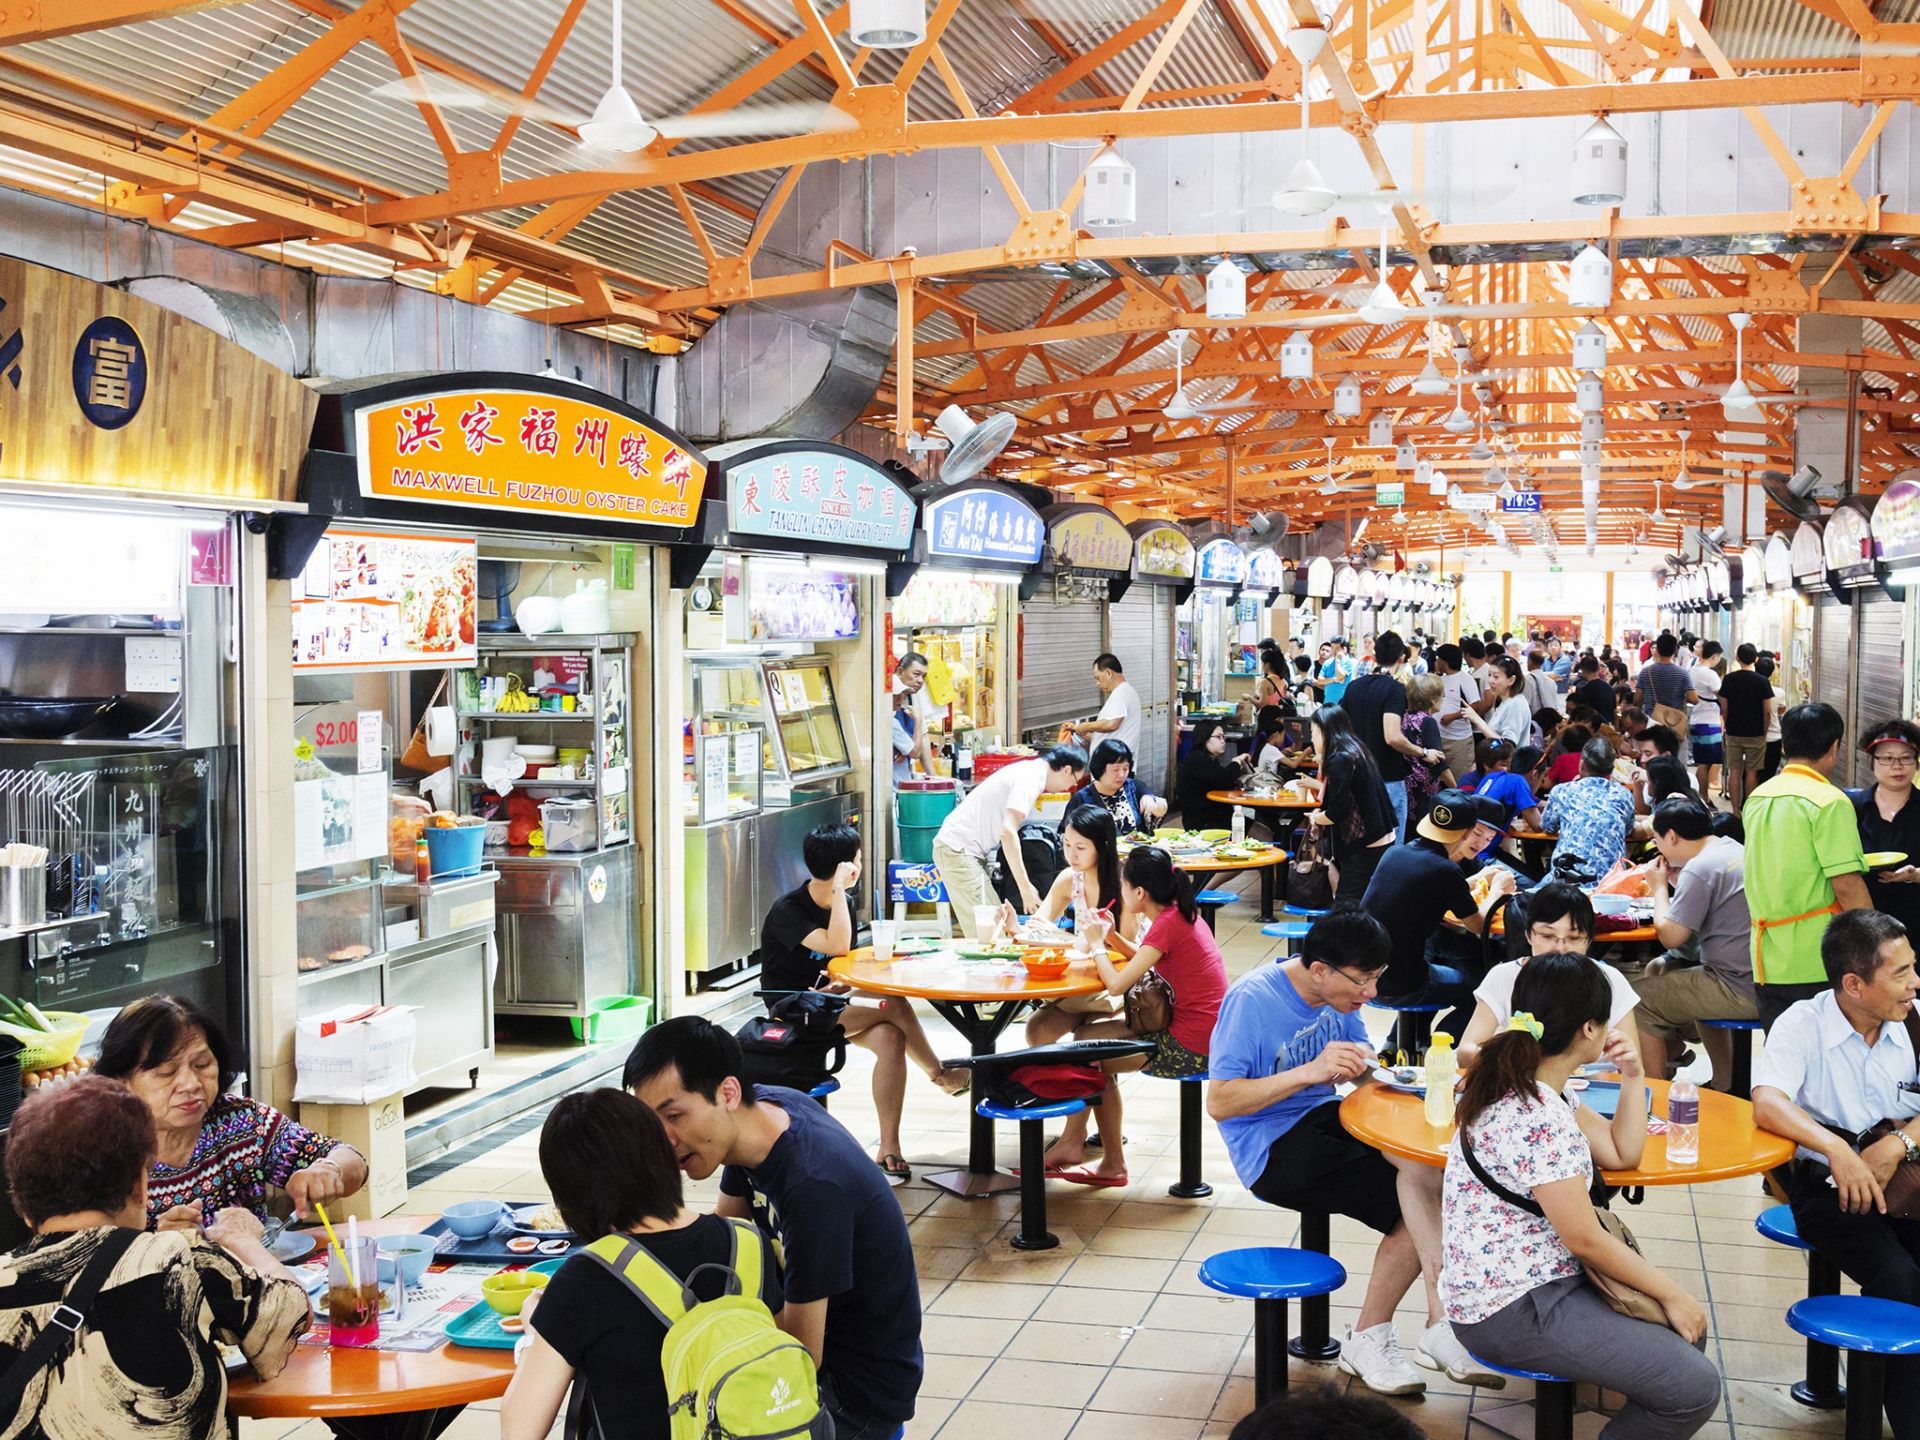 Truyền thống ăn uống của người Singapore tại các trung tâm “hàng rong” (hawker centre) đã được UNESCO công nhận vì ý nghĩa văn hóa của nó.